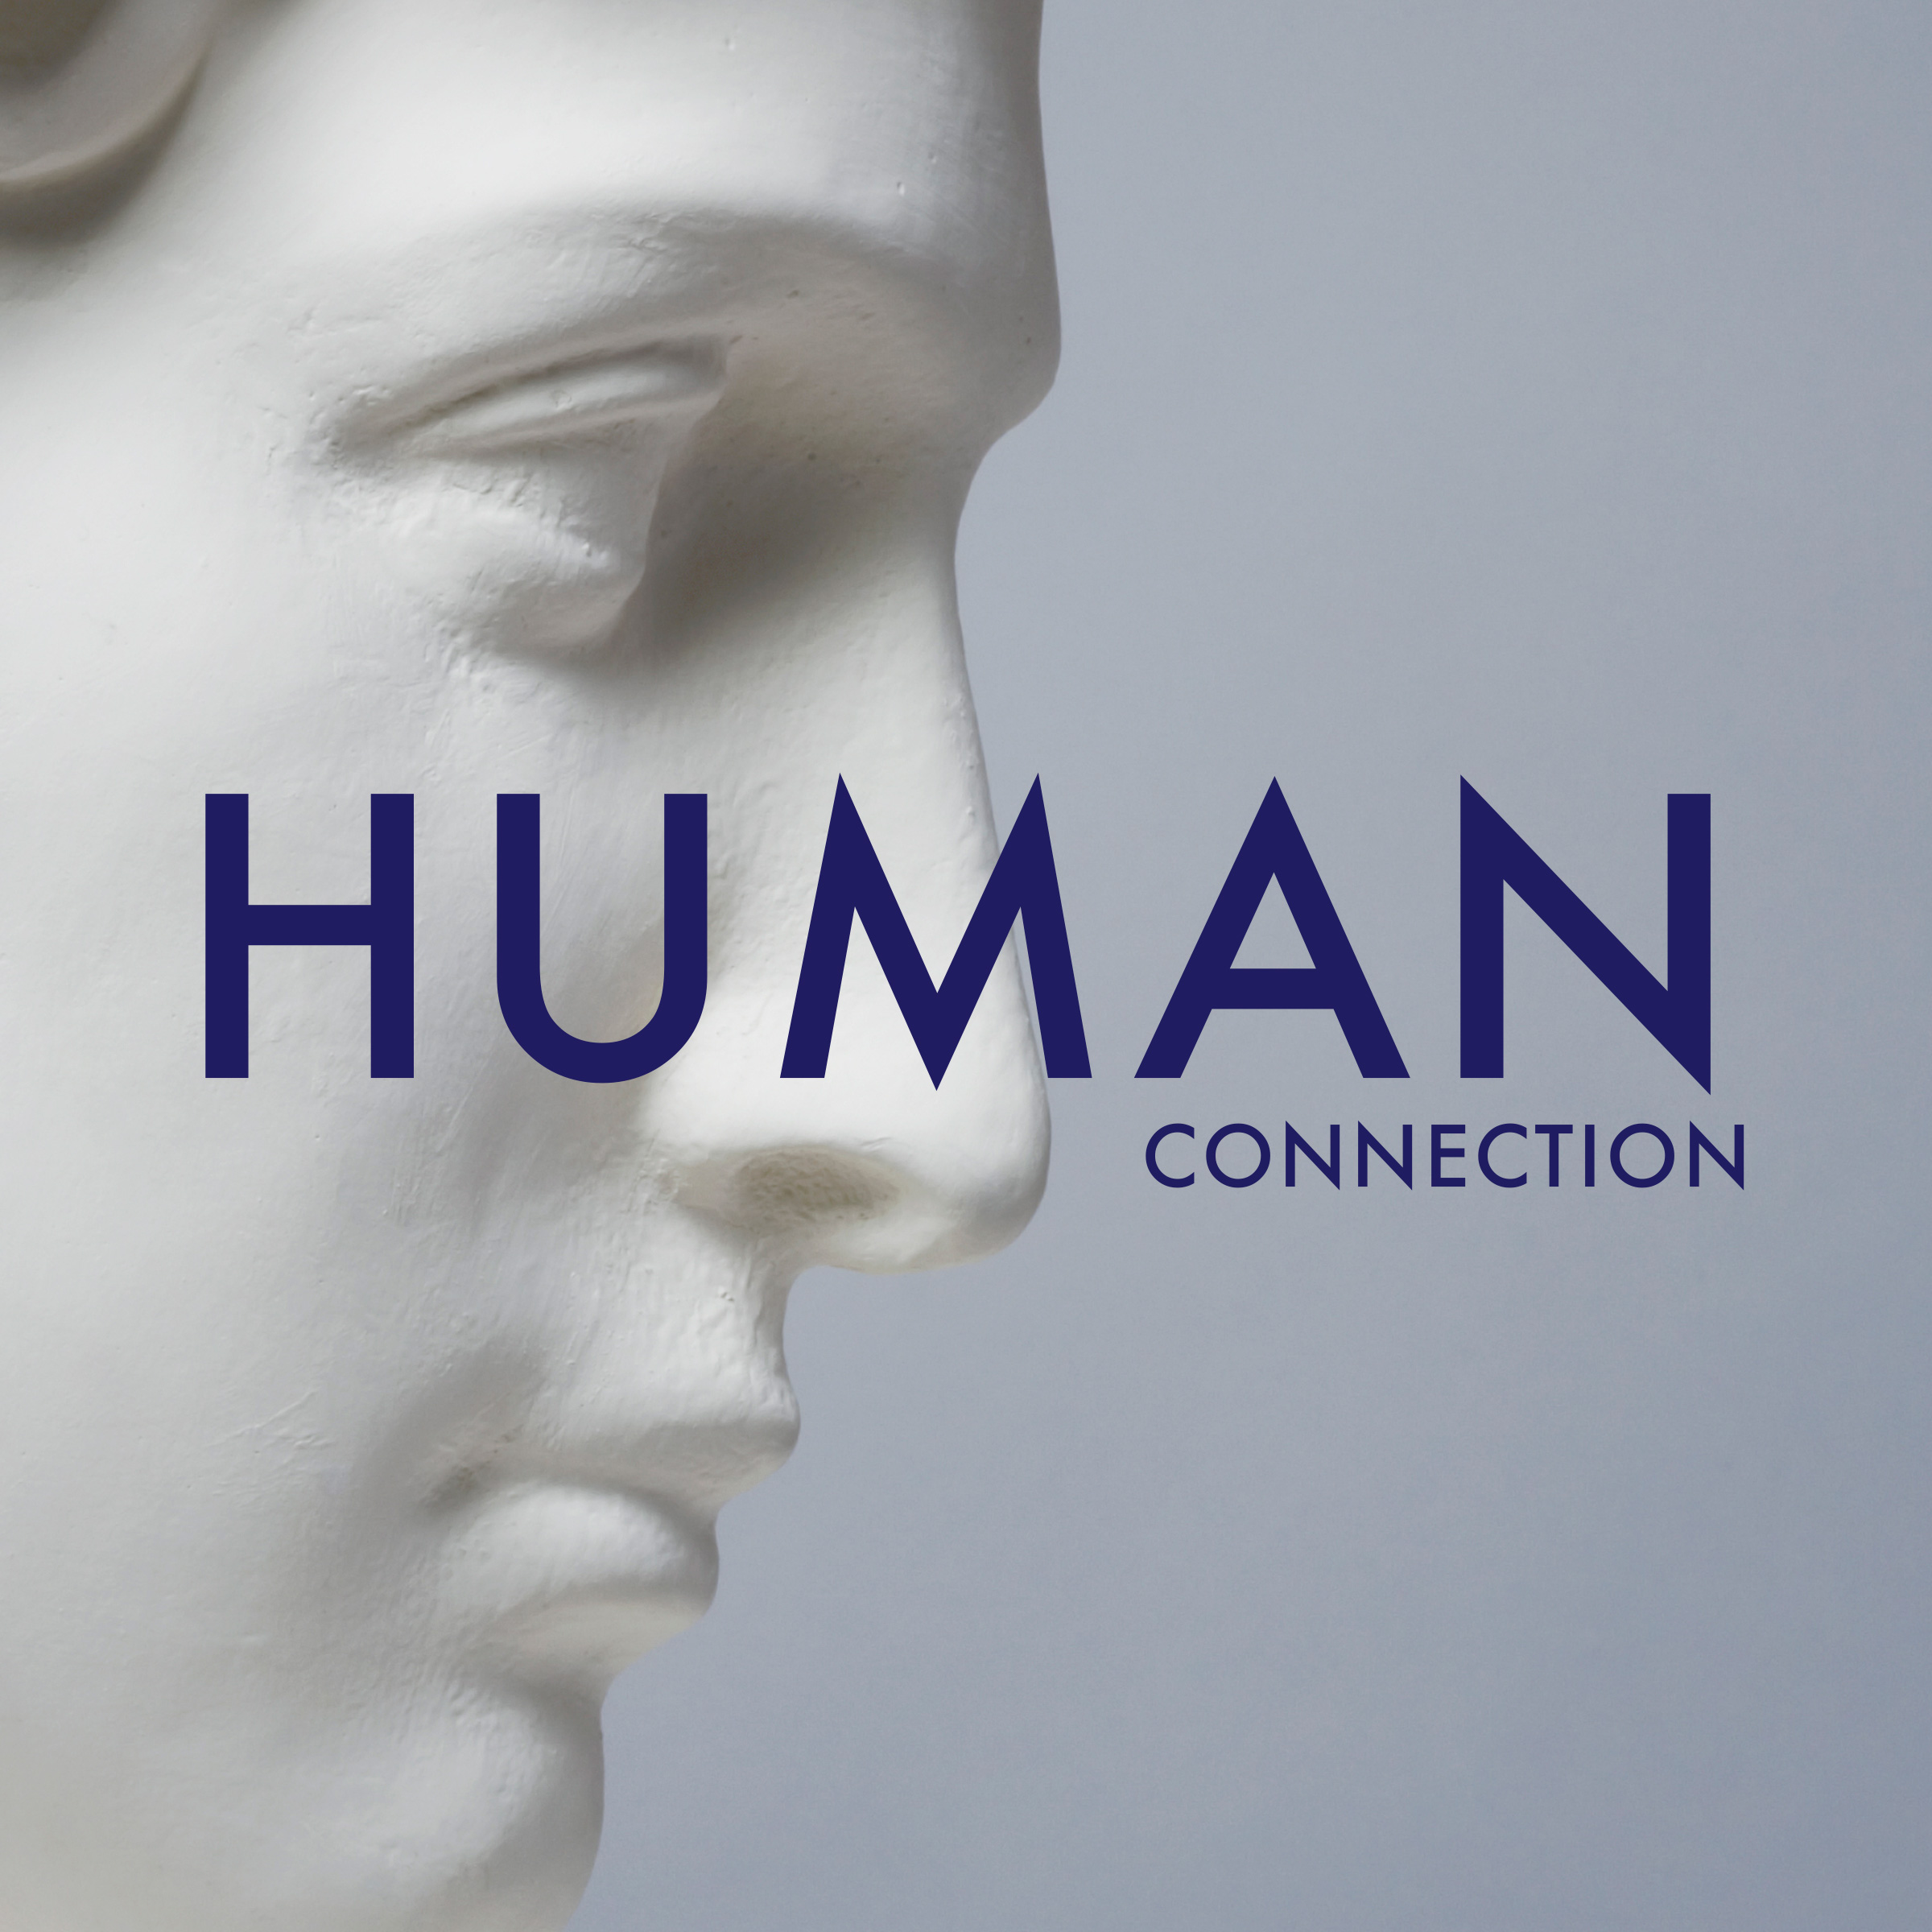 human